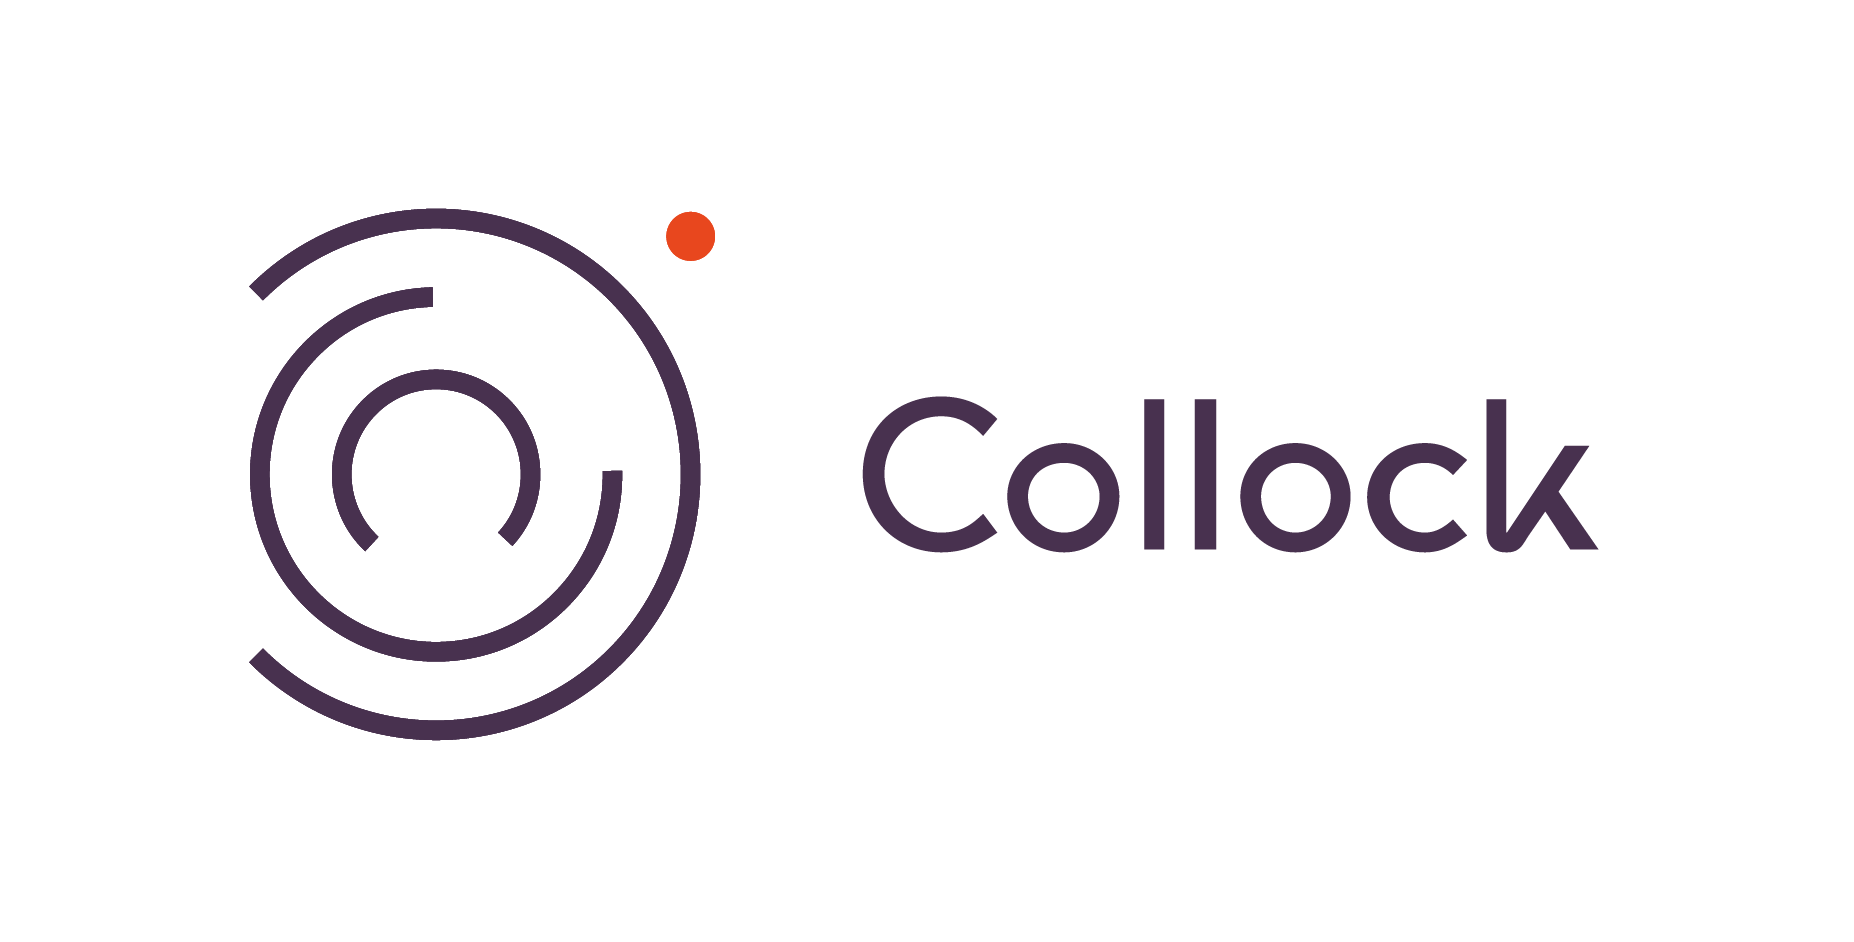 Collock - start up sur la gamification en entreprise